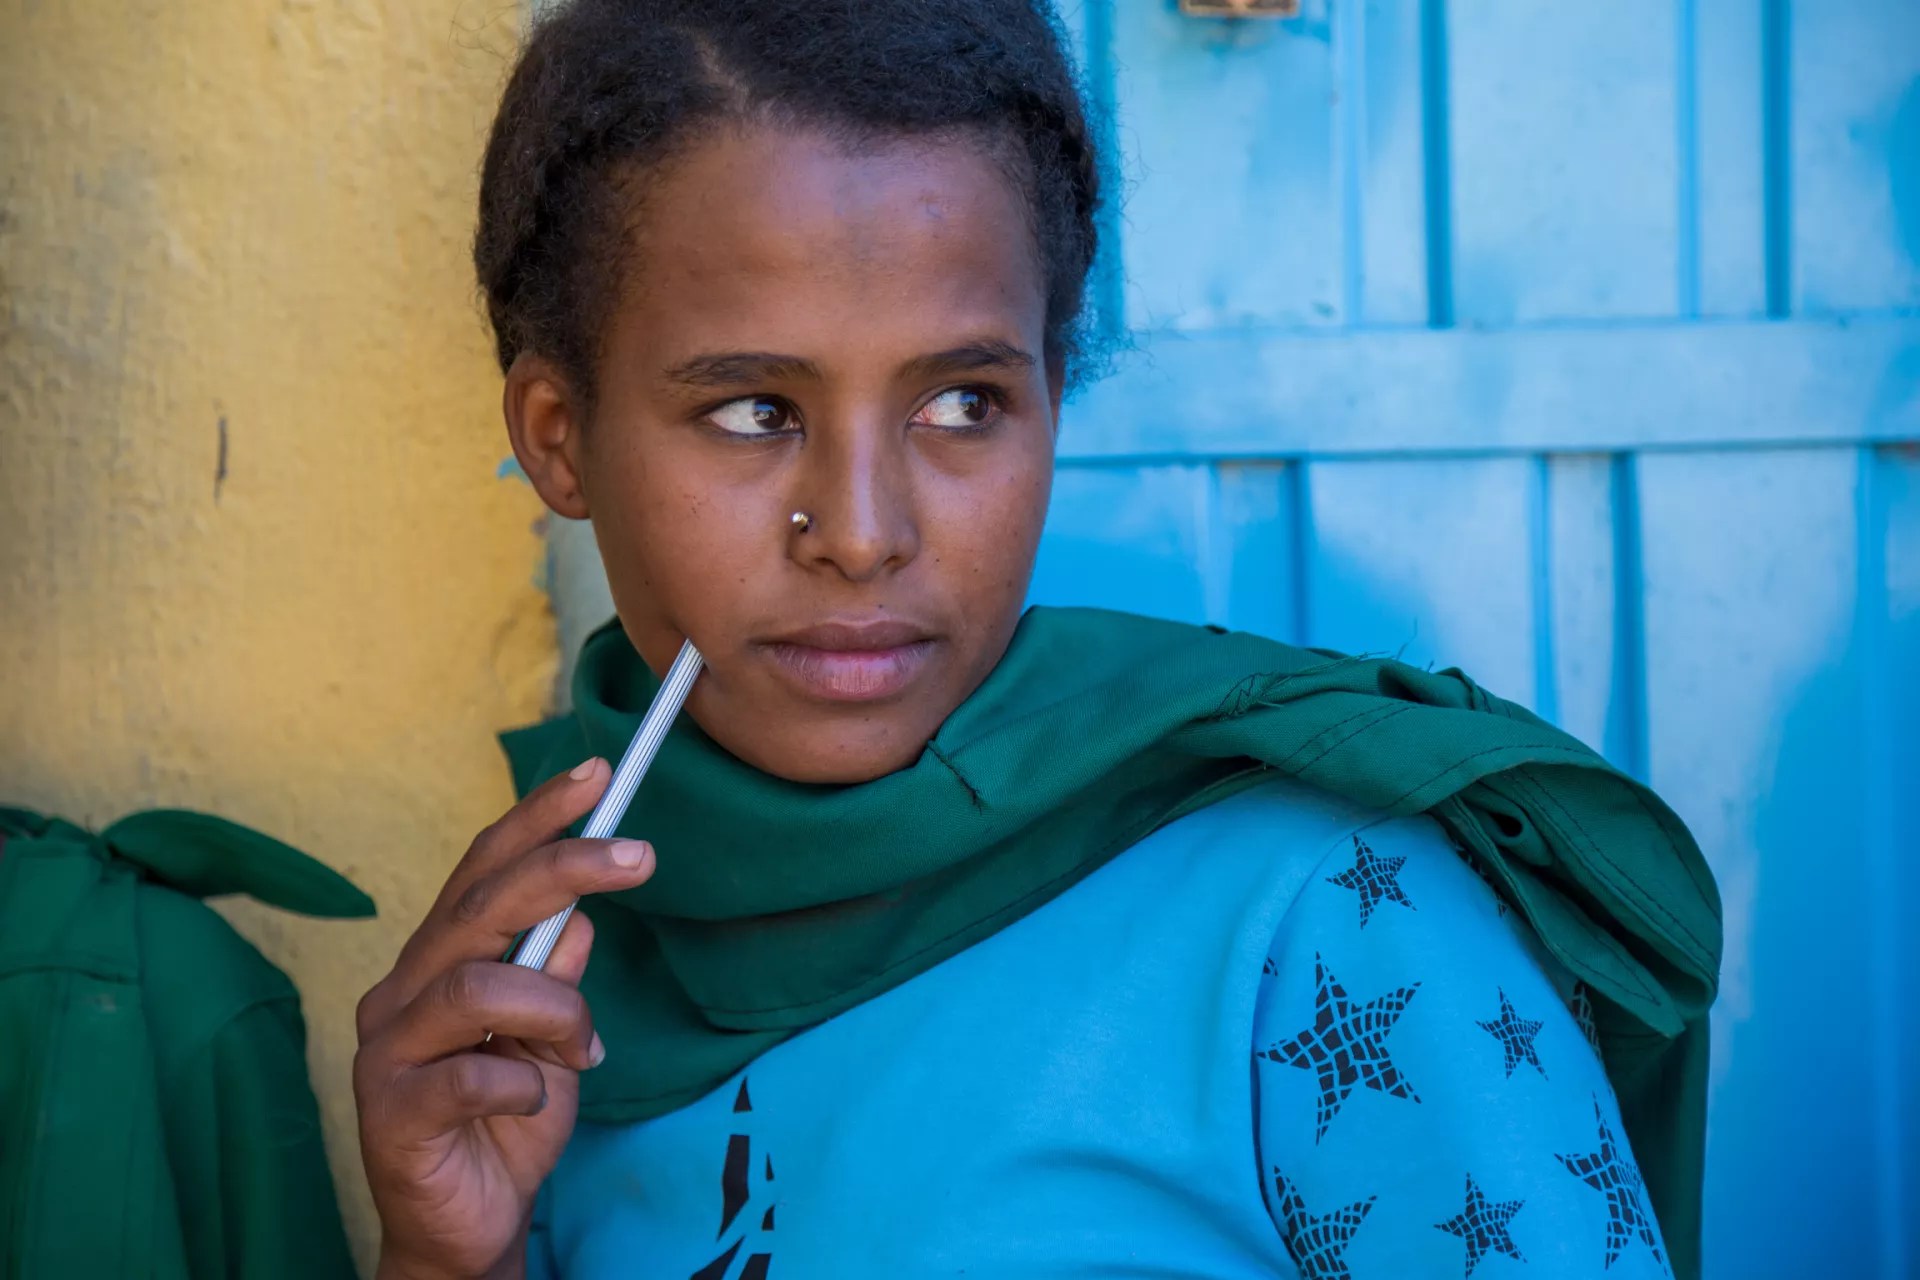 Adolescent girl in Ethiopia.